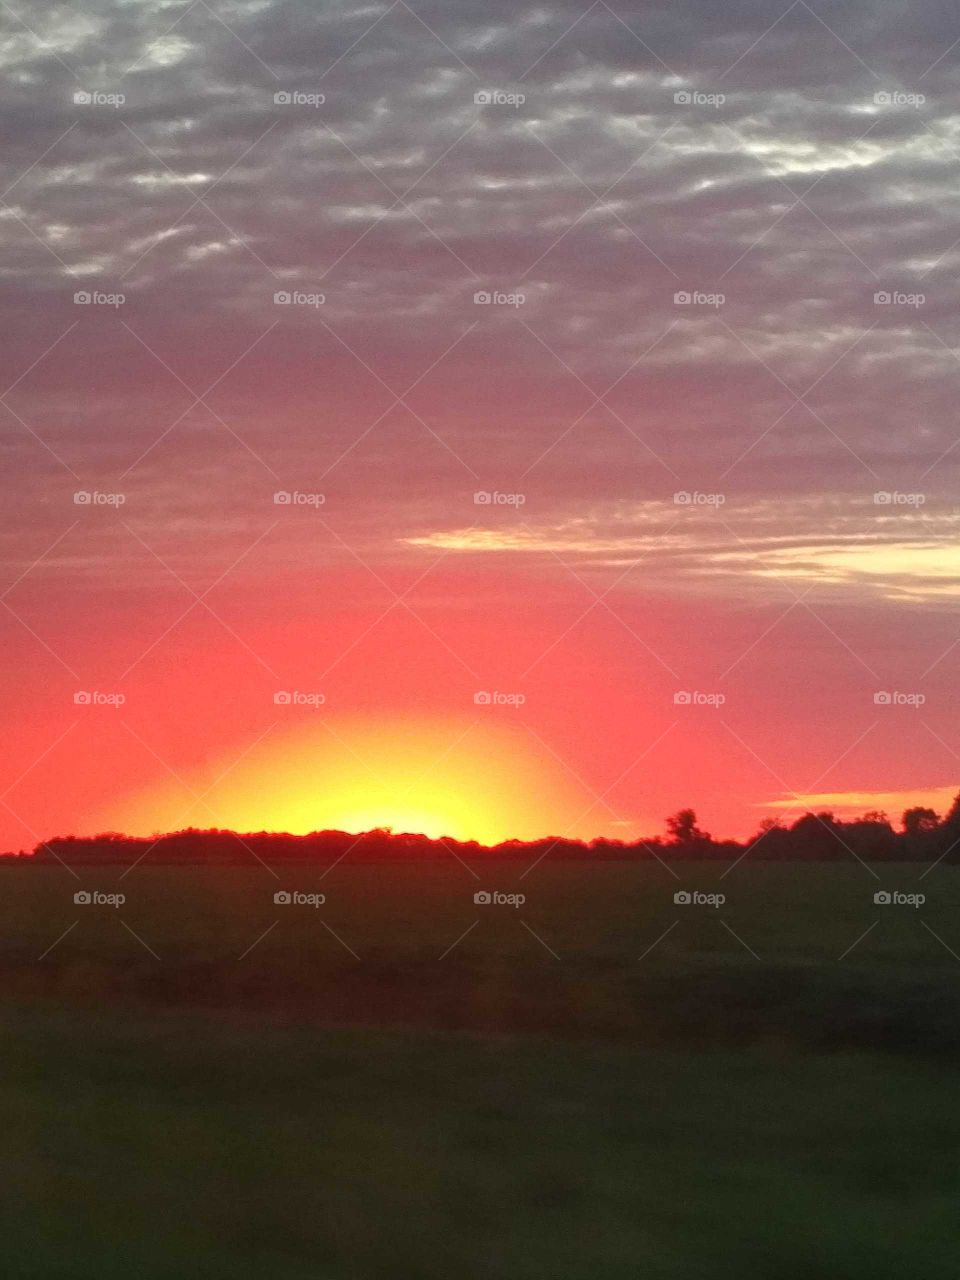 Missouri sunset